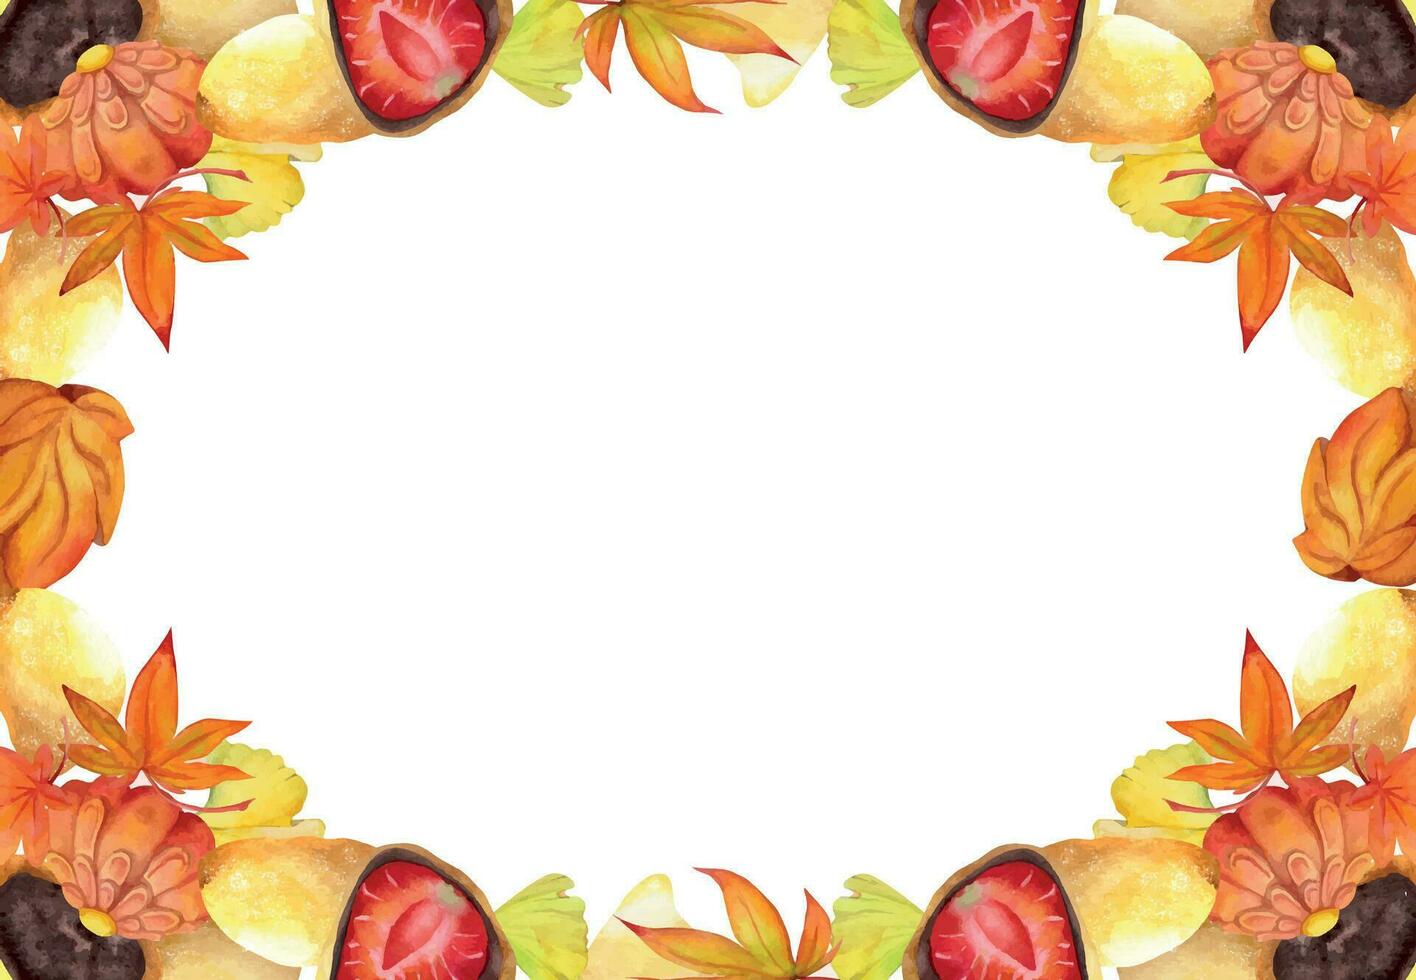 Aquarell Hand gezeichnet traditionell japanisch Süßigkeiten. Platz Rahmen von Herbst wagashi mit Blätter. isoliert auf Weiß Hintergrund. Design zum Einladungen, Restaurant Speisekarte, Gruß Karten, drucken, Textil- vektor